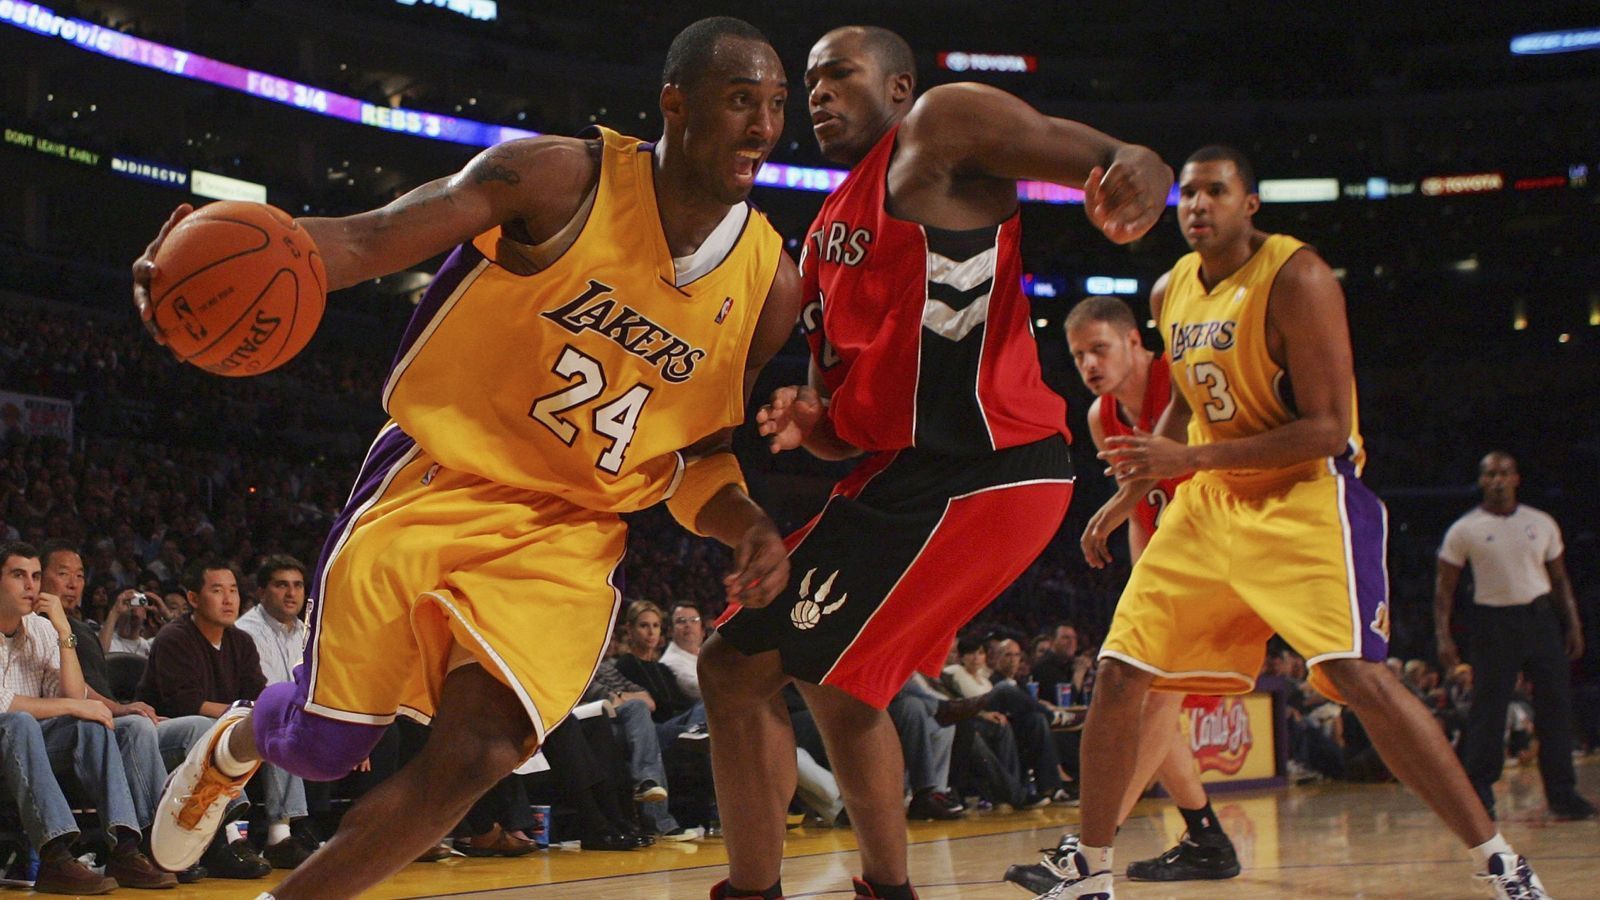 
                <strong>81-Punkte-Spiel gegen die Raptors</strong><br>
                Gegen die Toronto Raptors erzielte Bryant am 22. Januar 2006 81 Punkte - die zweithöchste Punktzahl der NBA-Geschichte und die höchste seit der Einführung der Drei-Punkte-Linie.
              